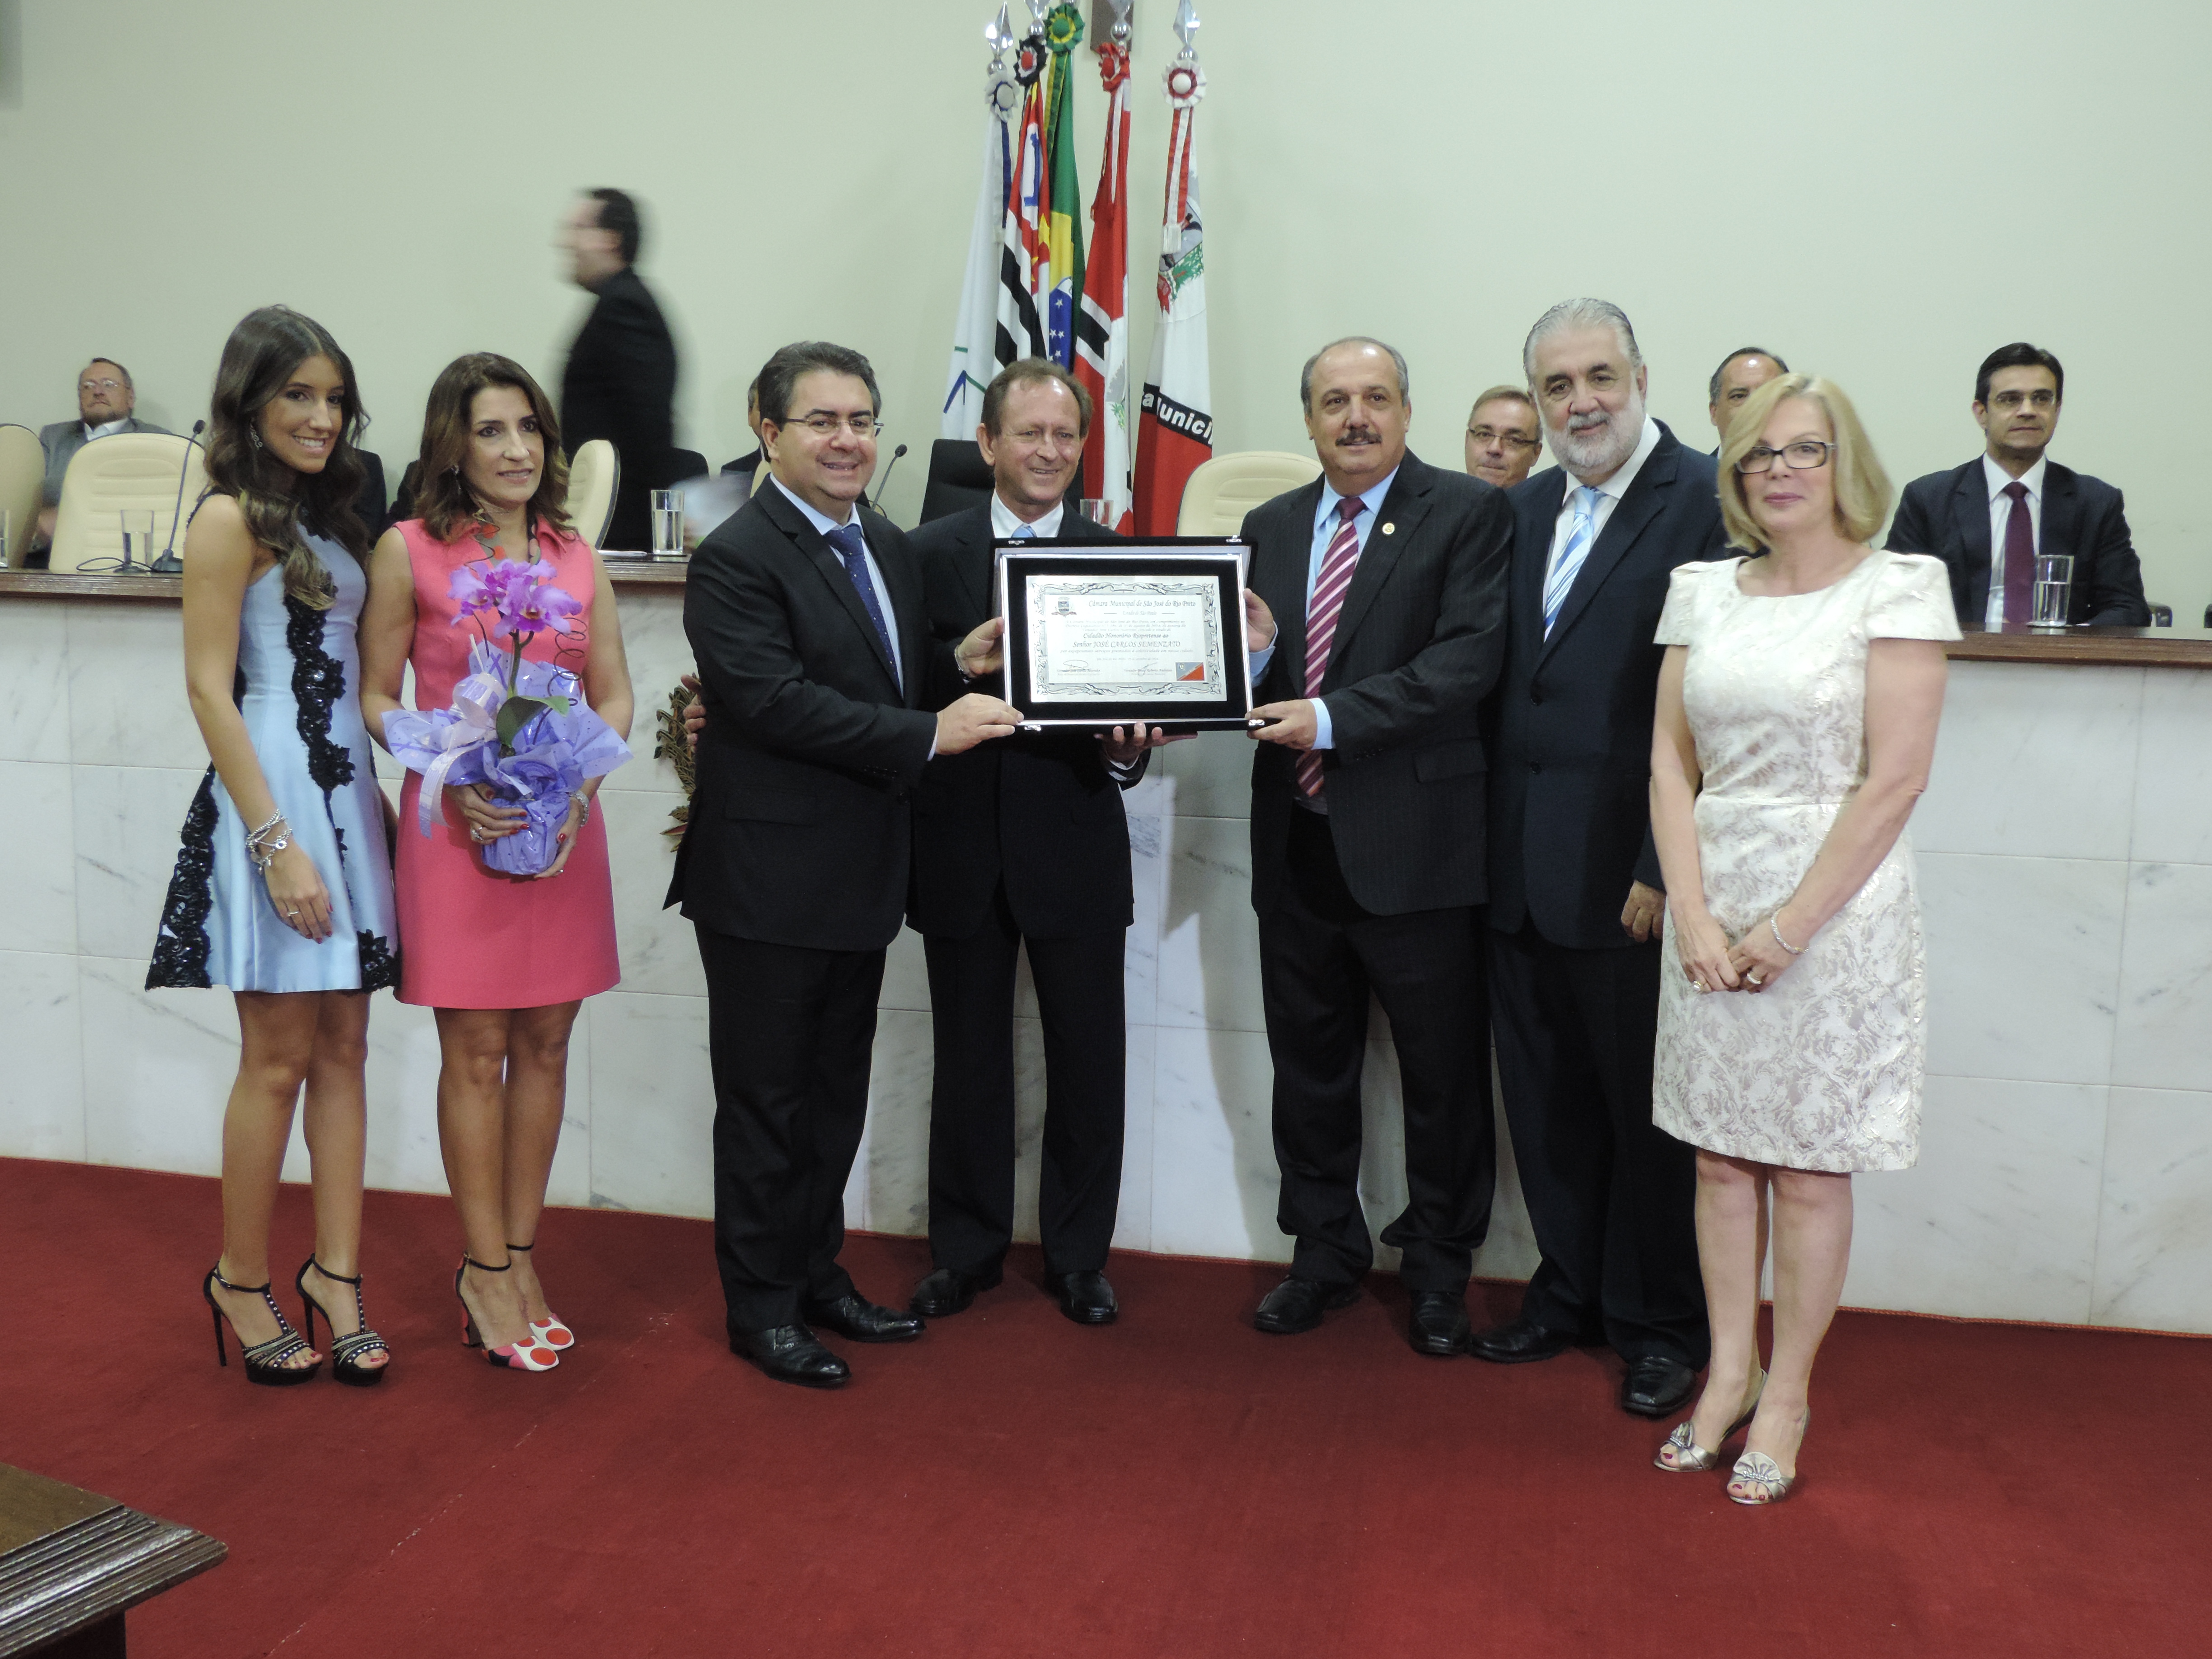 José Carlos Semenzato recebe título de cidadão rio-pretense